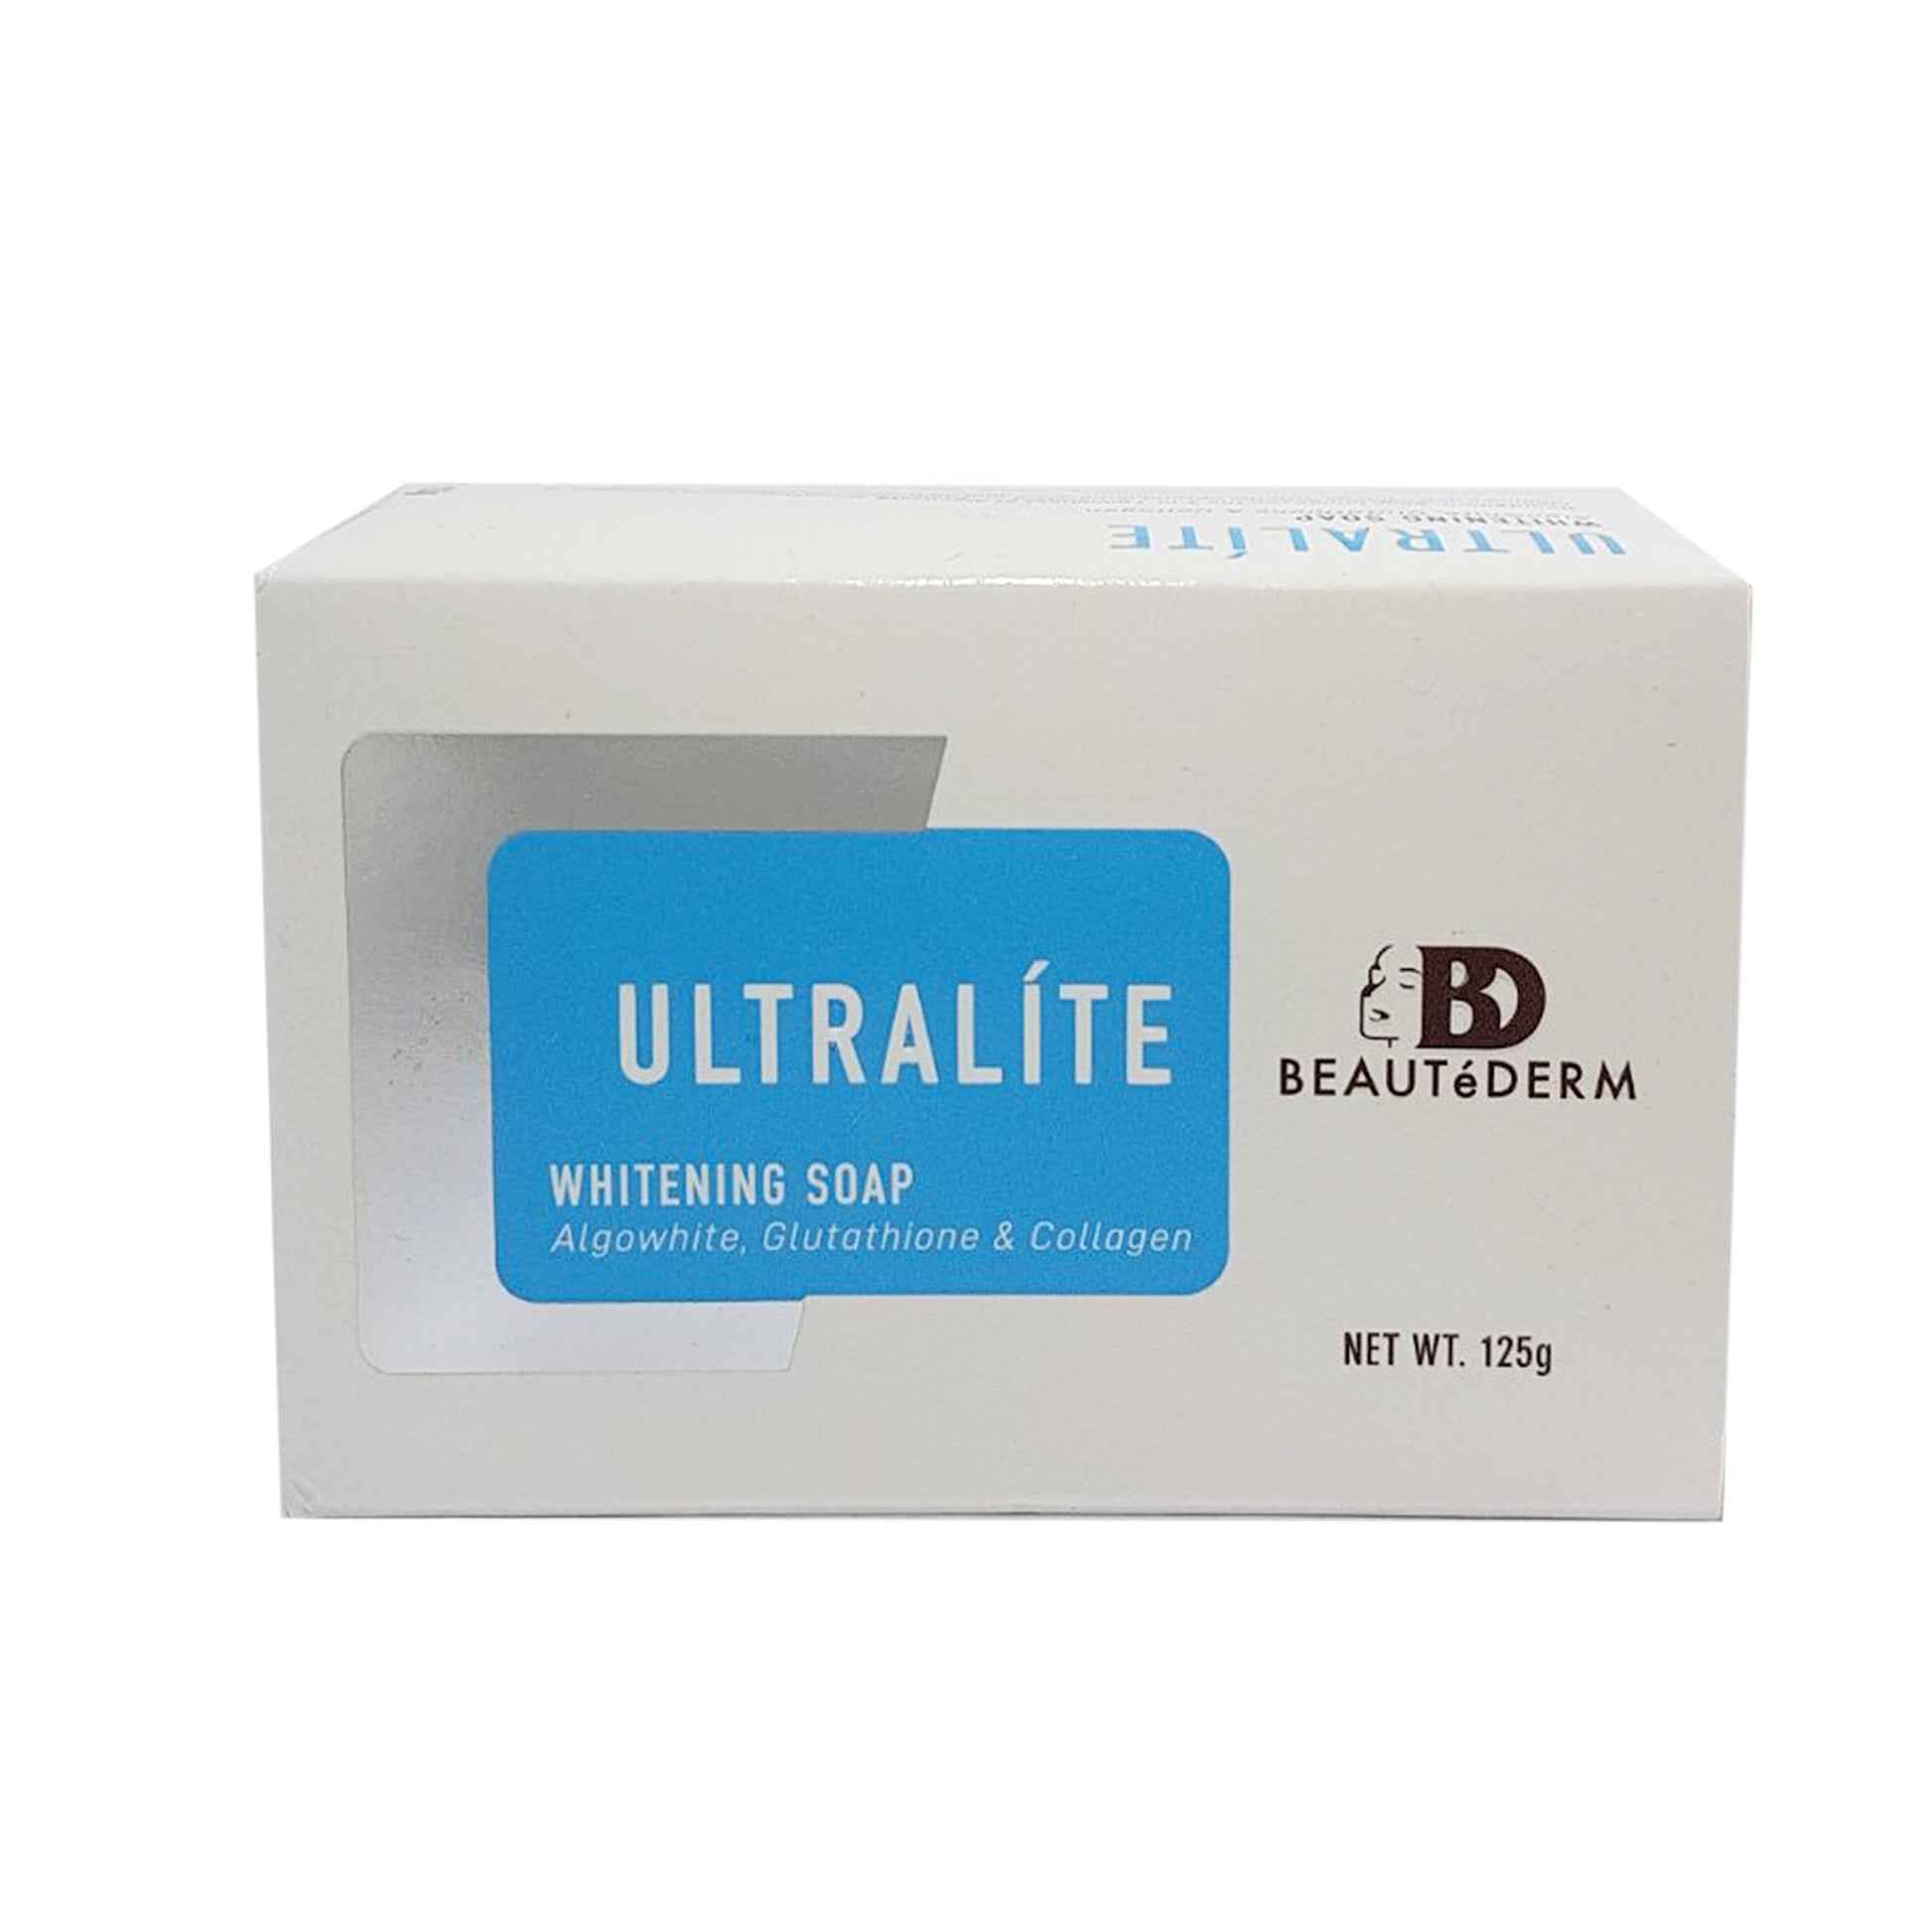 Beautederm Ultralite Whitening Soap